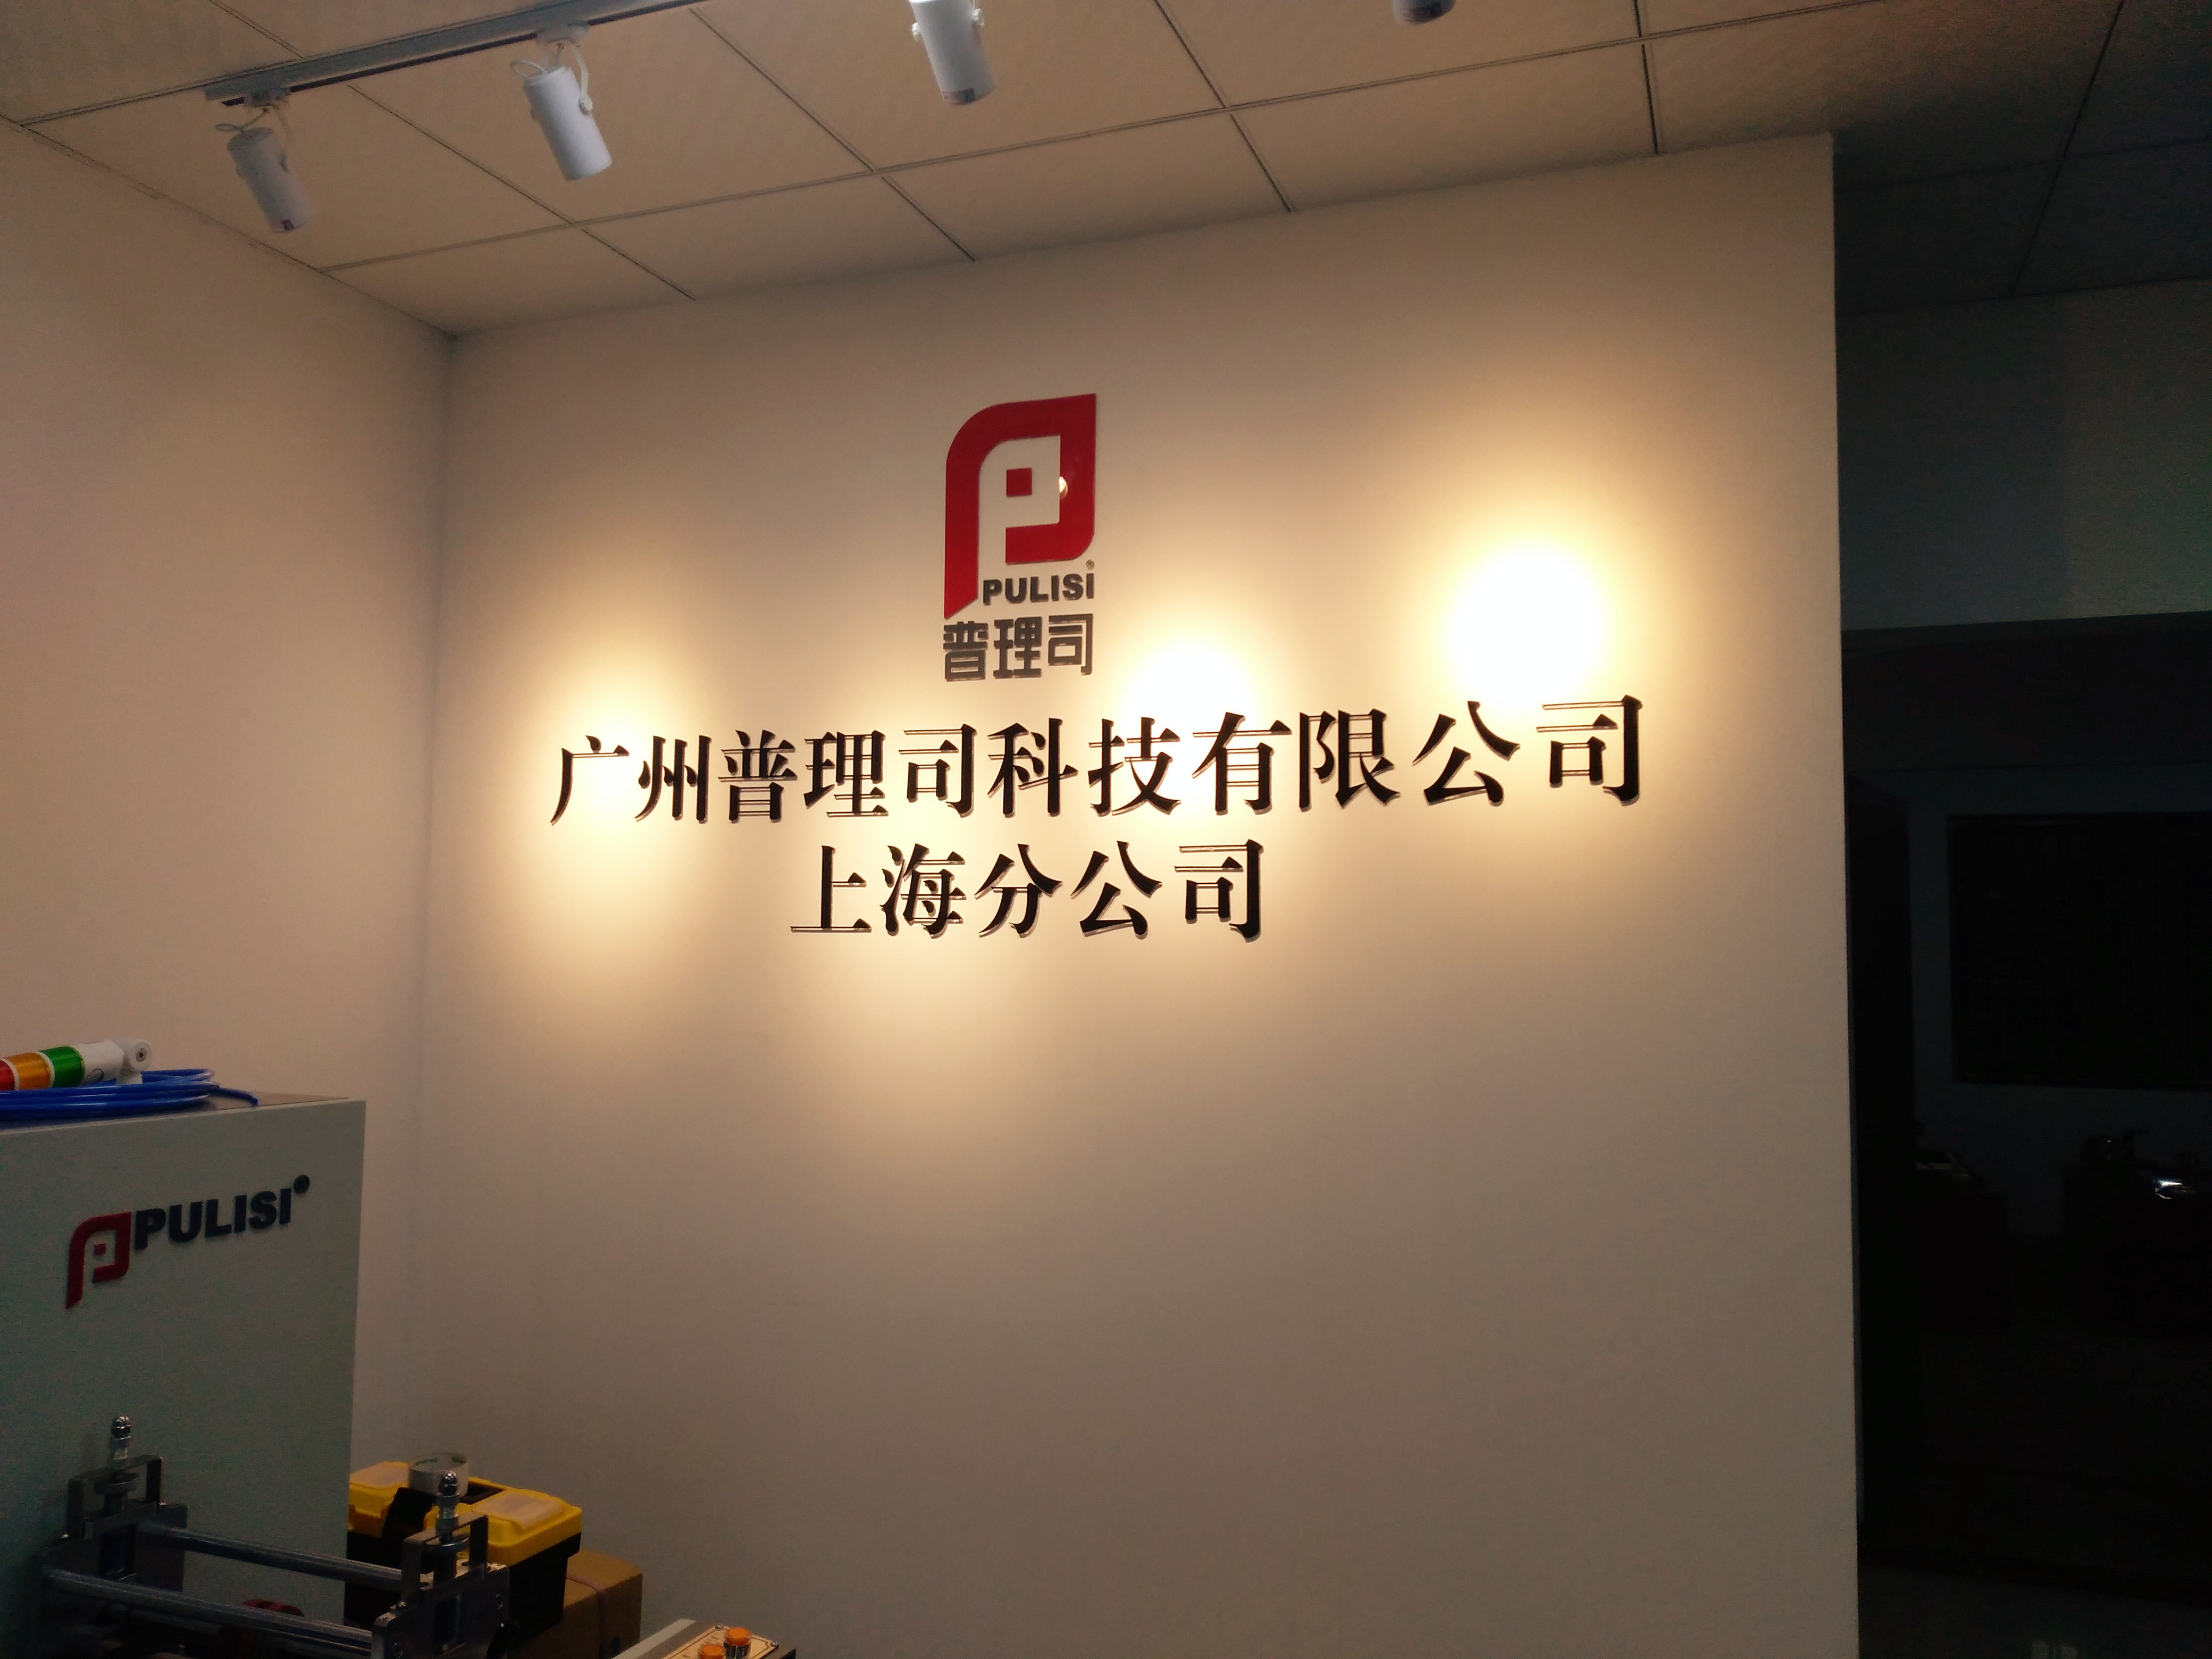 上海公司名称标牌、形象背景墙制作、企业宣传标语、荣誉展示墙